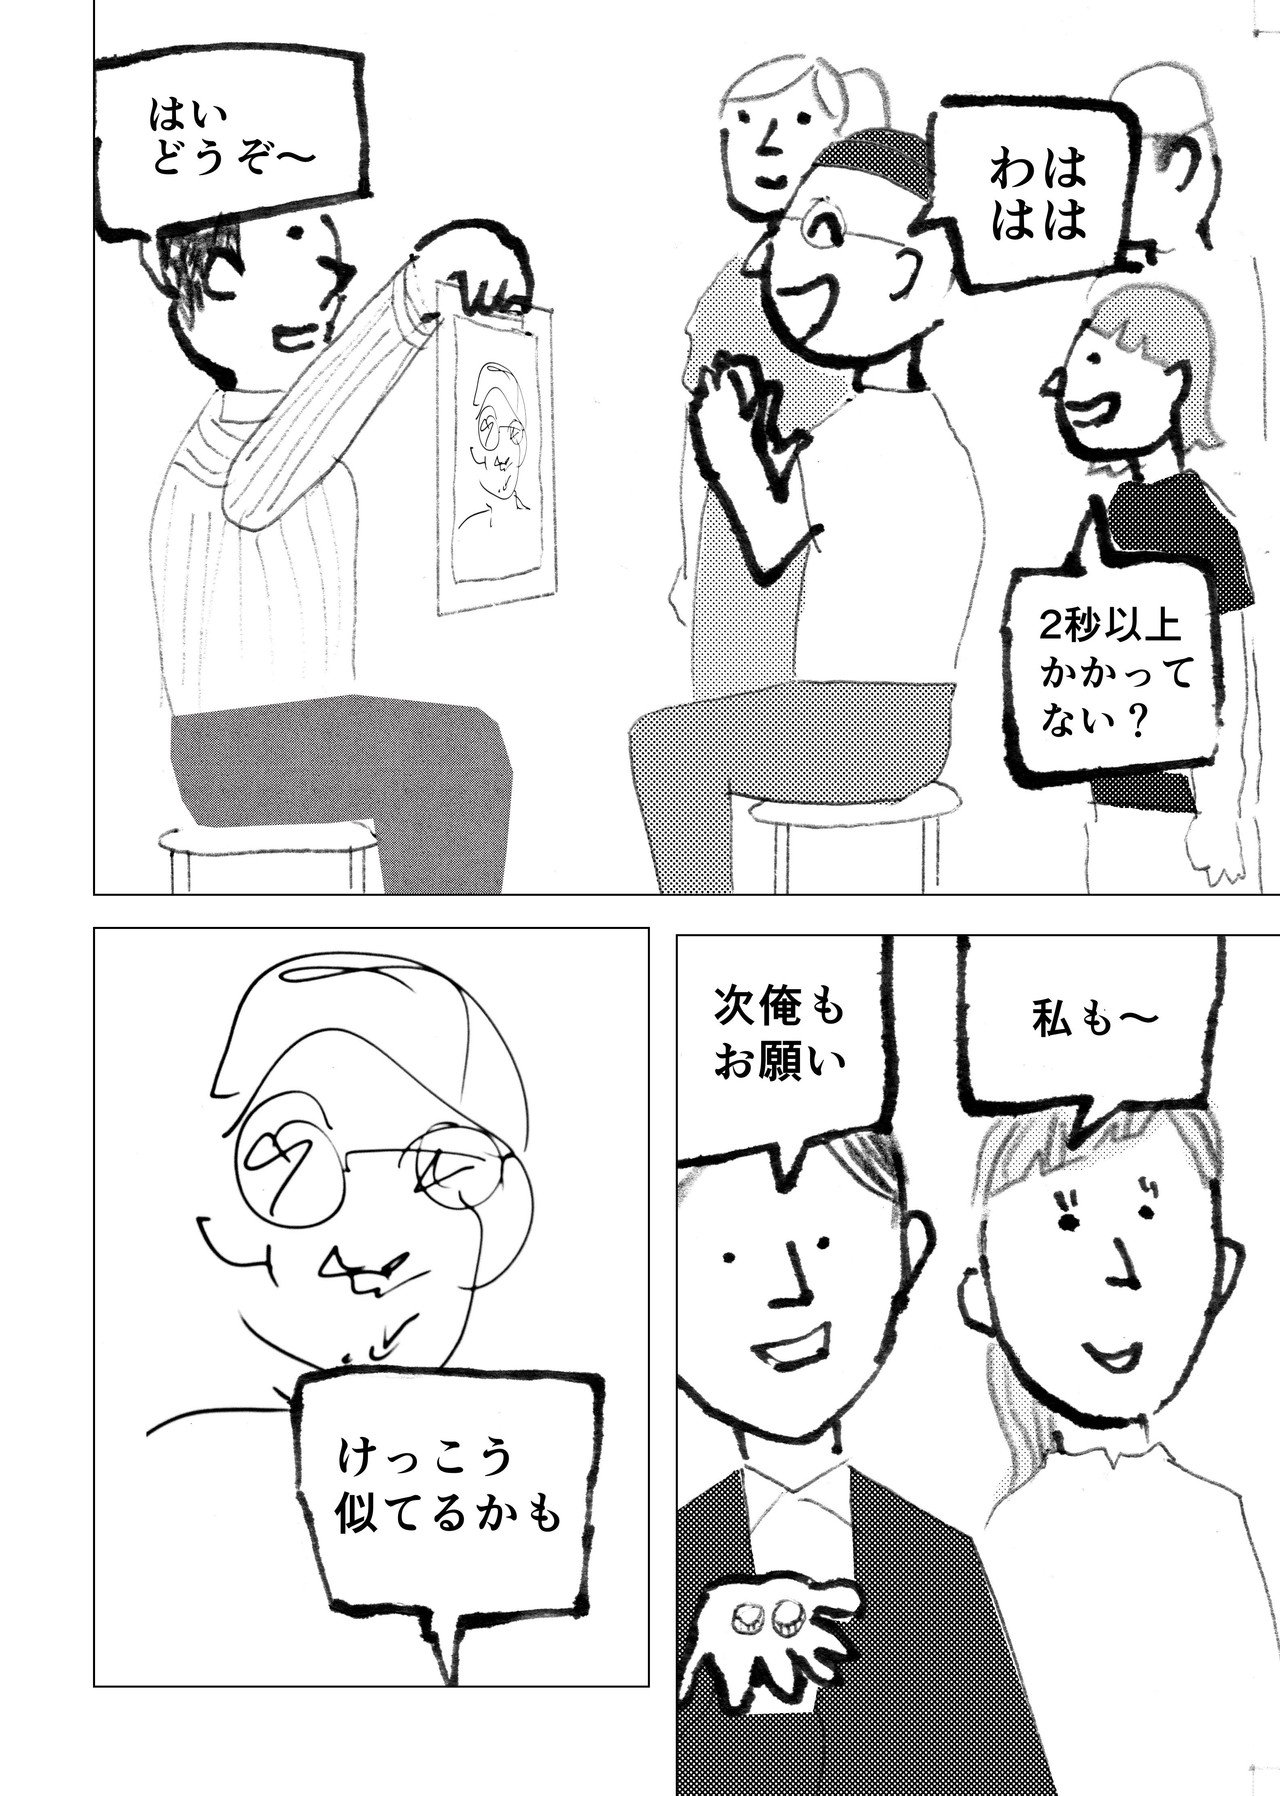 漫画_似顔絵_4